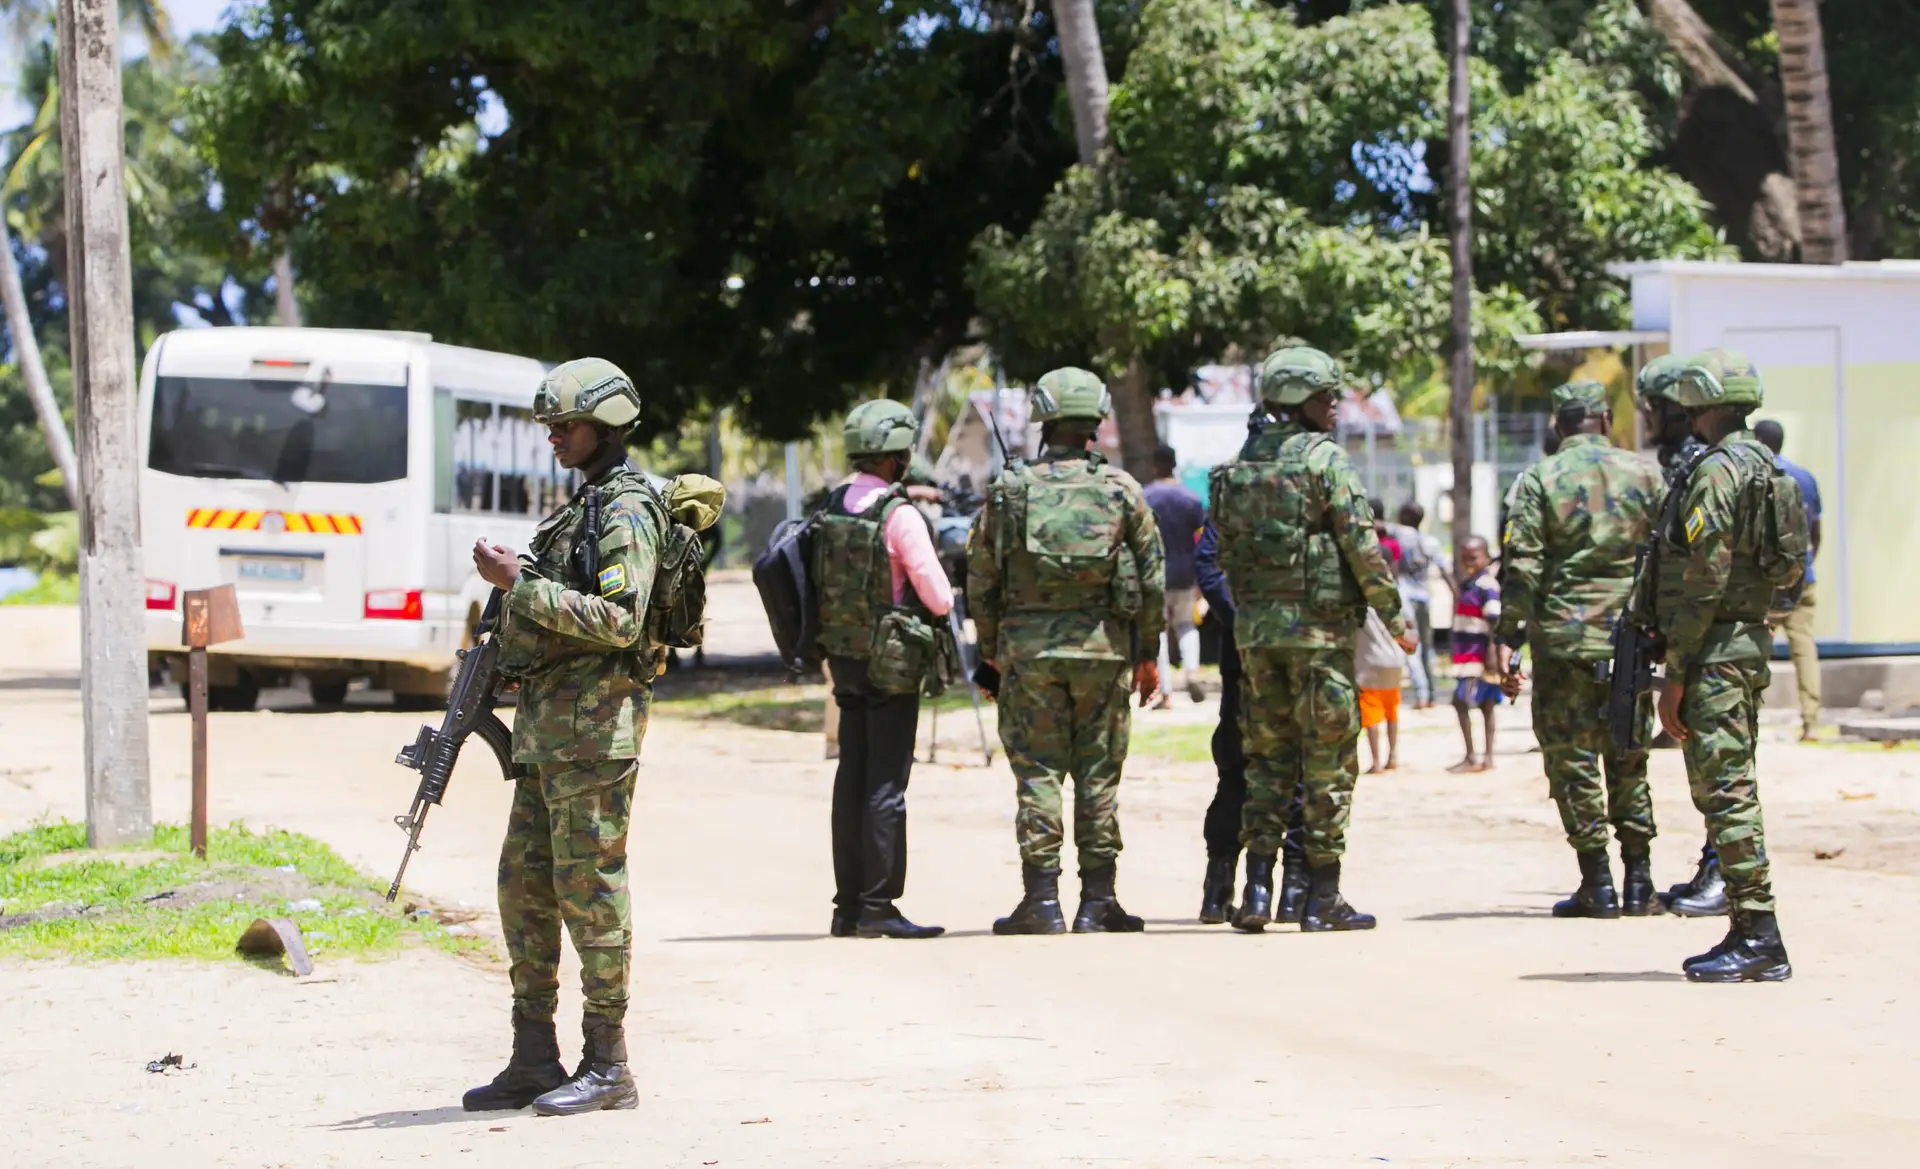 Vila na província moçambicana de Cabo Delgado atacada por rebeldes